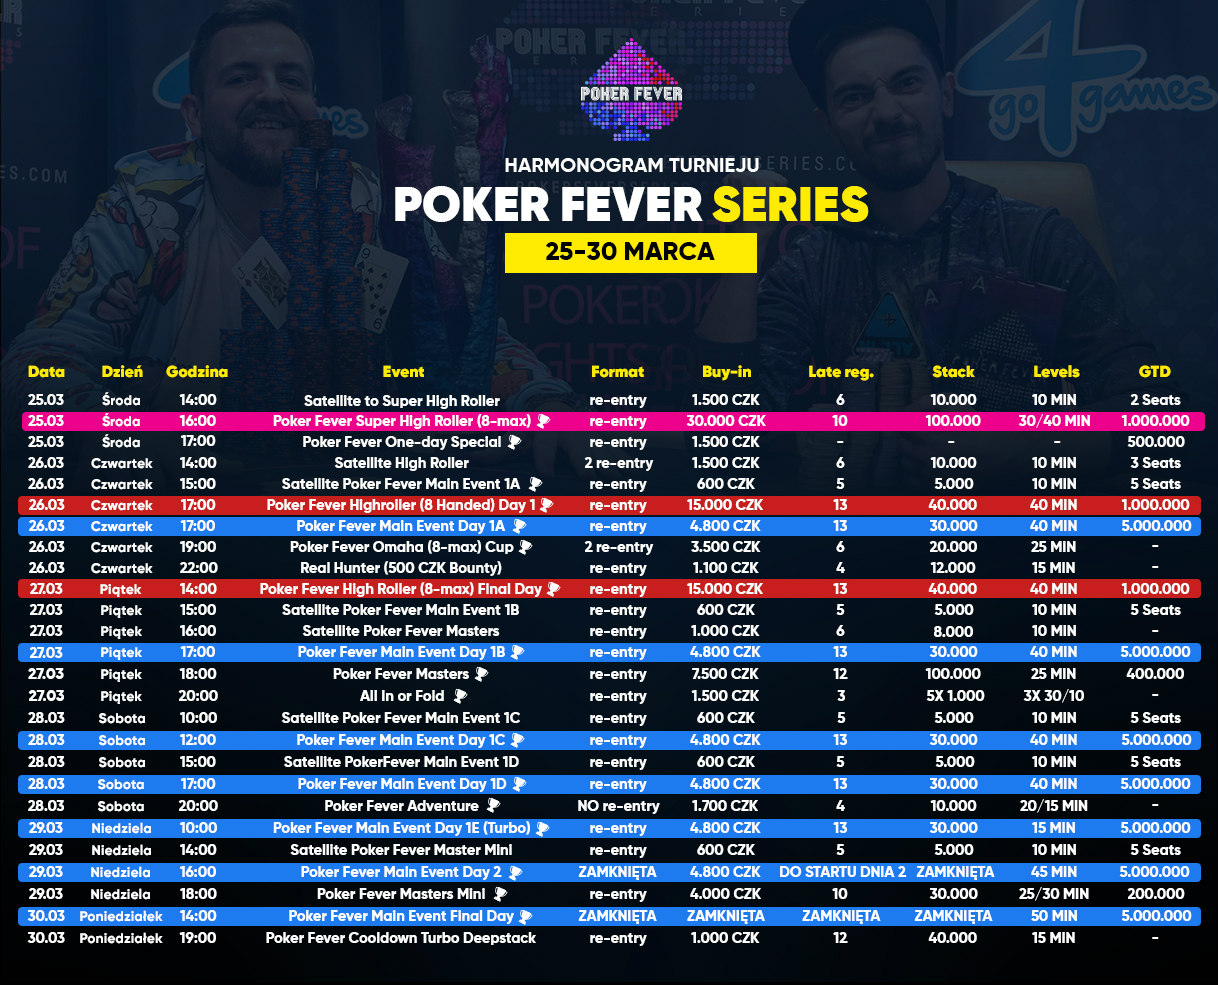 Harmonogram Poker Fever Series - marzec 2020